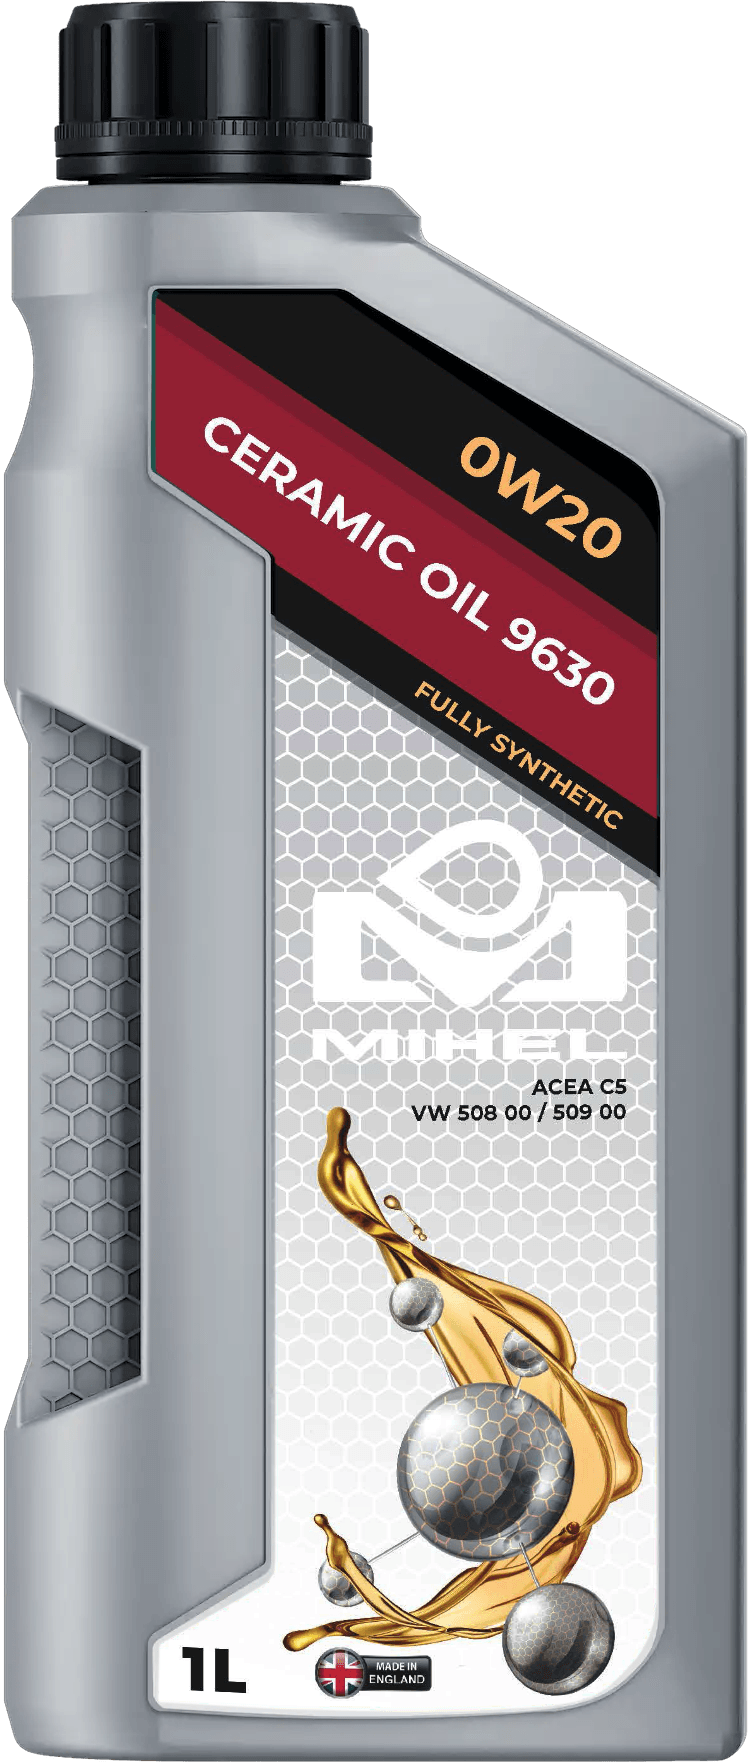 MIHEL Ceramic Oil® 9630 0W20